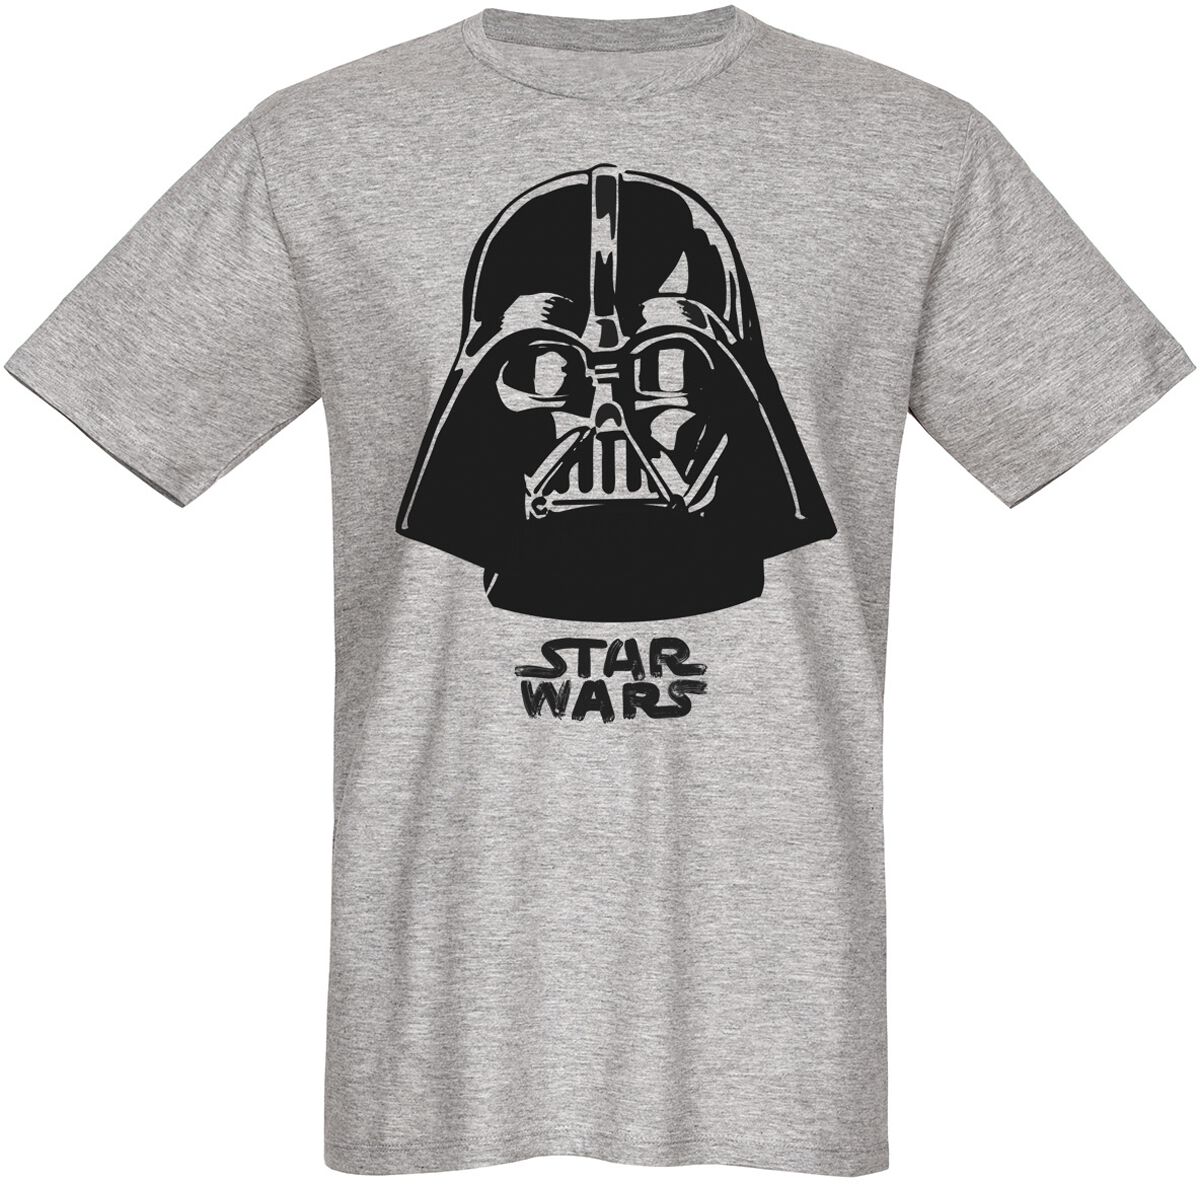 Star Wars T-Shirt - Darth Vader - The Boss - S bis 3XL - für Männer - Größe S - grau  - Lizenzierter Fanartikel